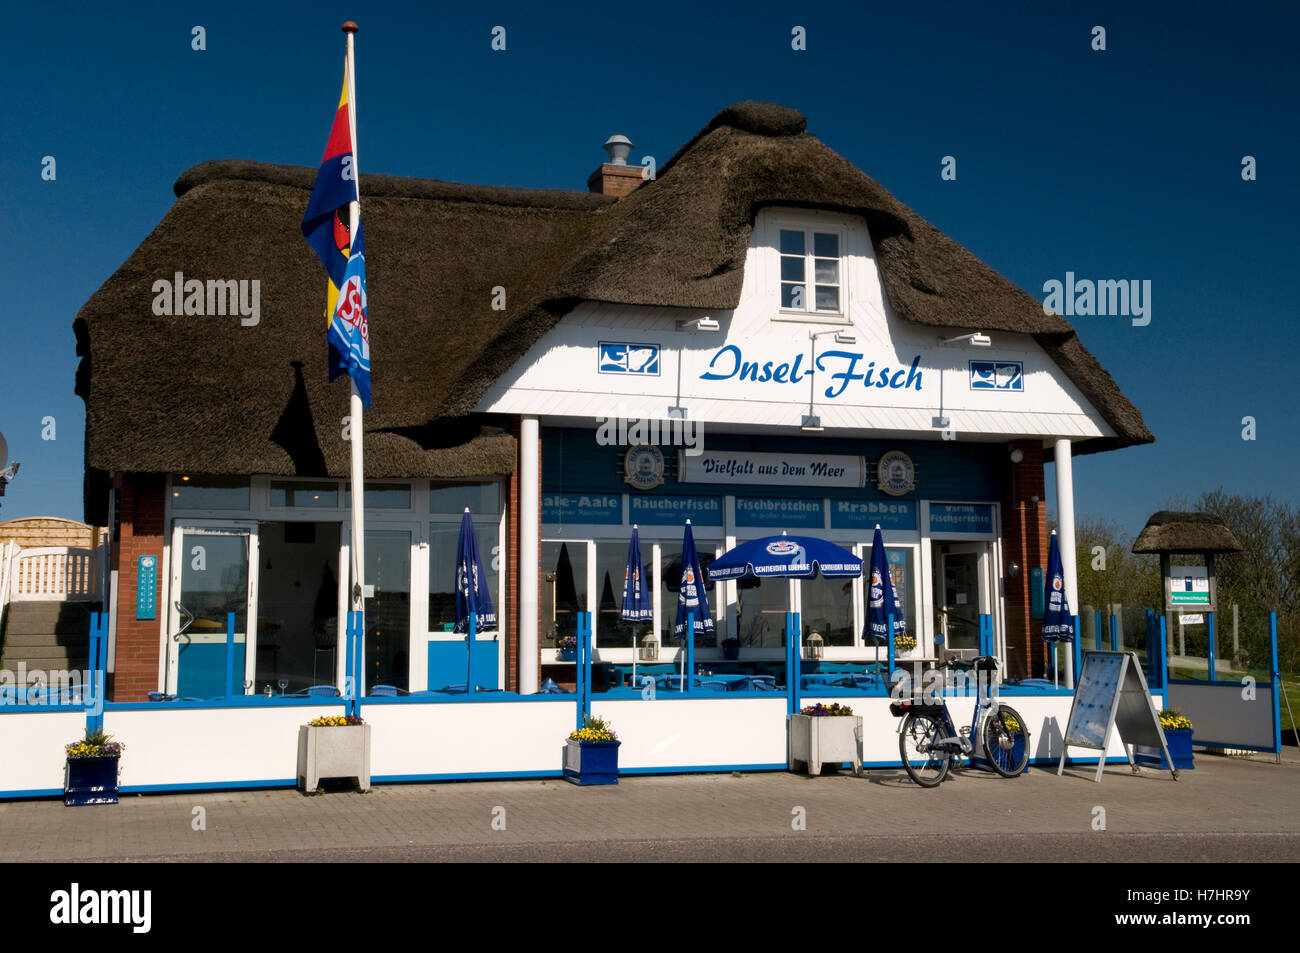 Maison de chaume, Insel-Fisch Norderhafen restaurant, port, l'île de Nordstrand, Schleswig-Holstein Banque D'Images